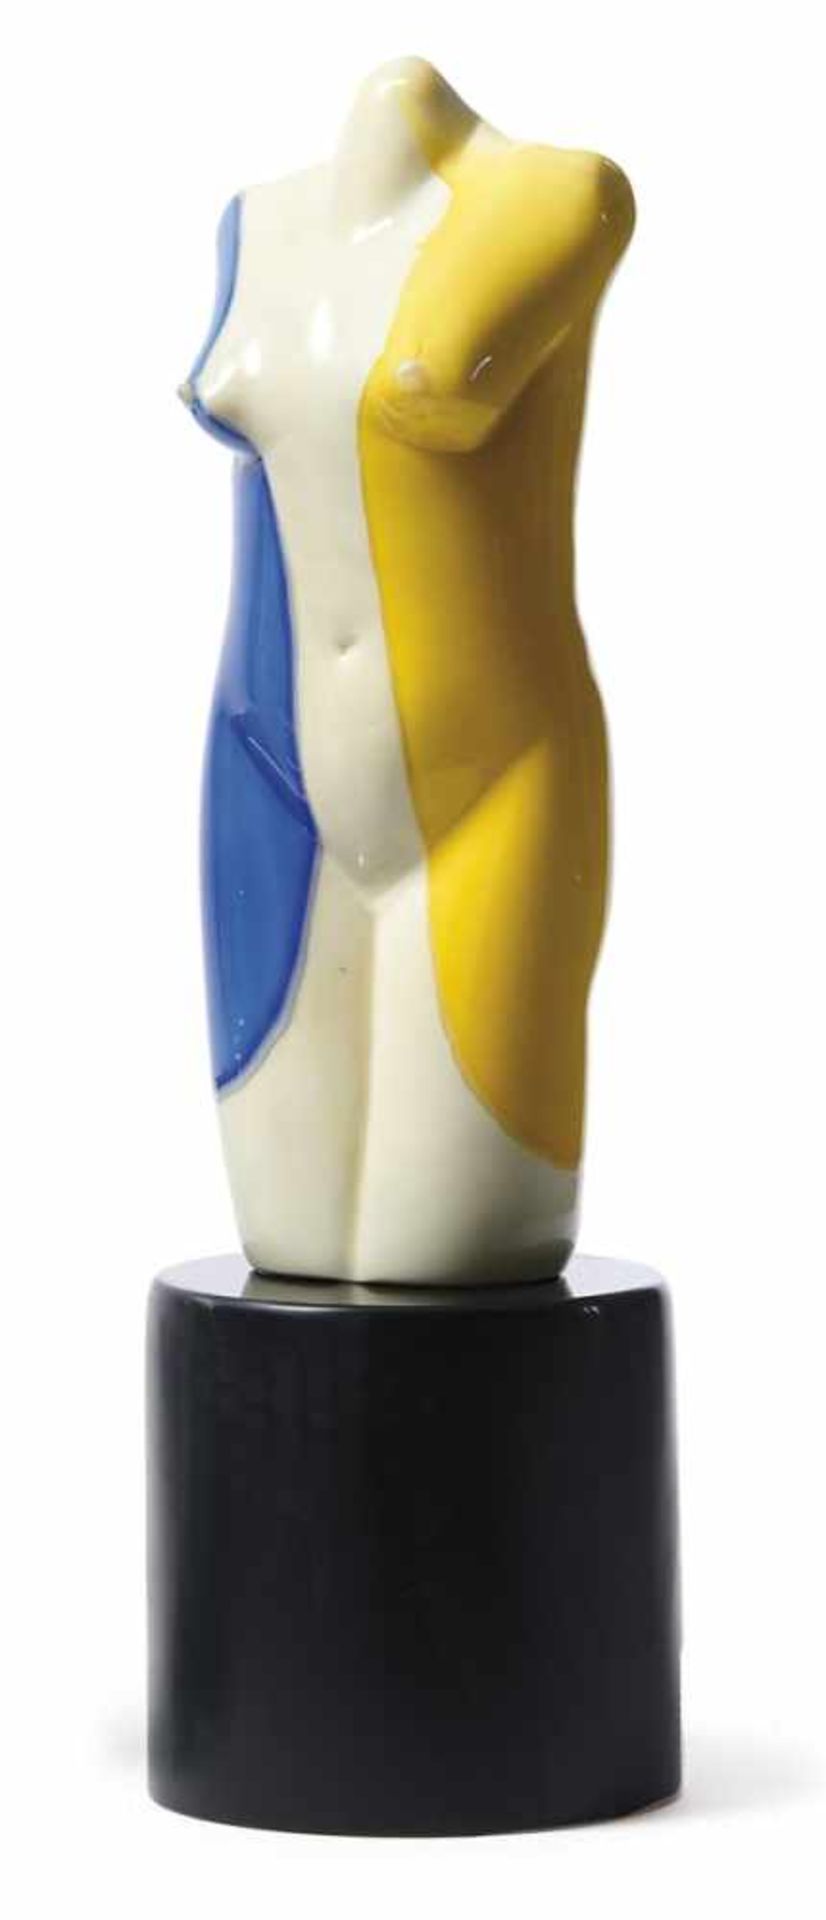 Glasskulptur "Frauentorso" Murano, 20. Jh. Blau-weiß-gelber, weiblicher Torso auf schwarzem,